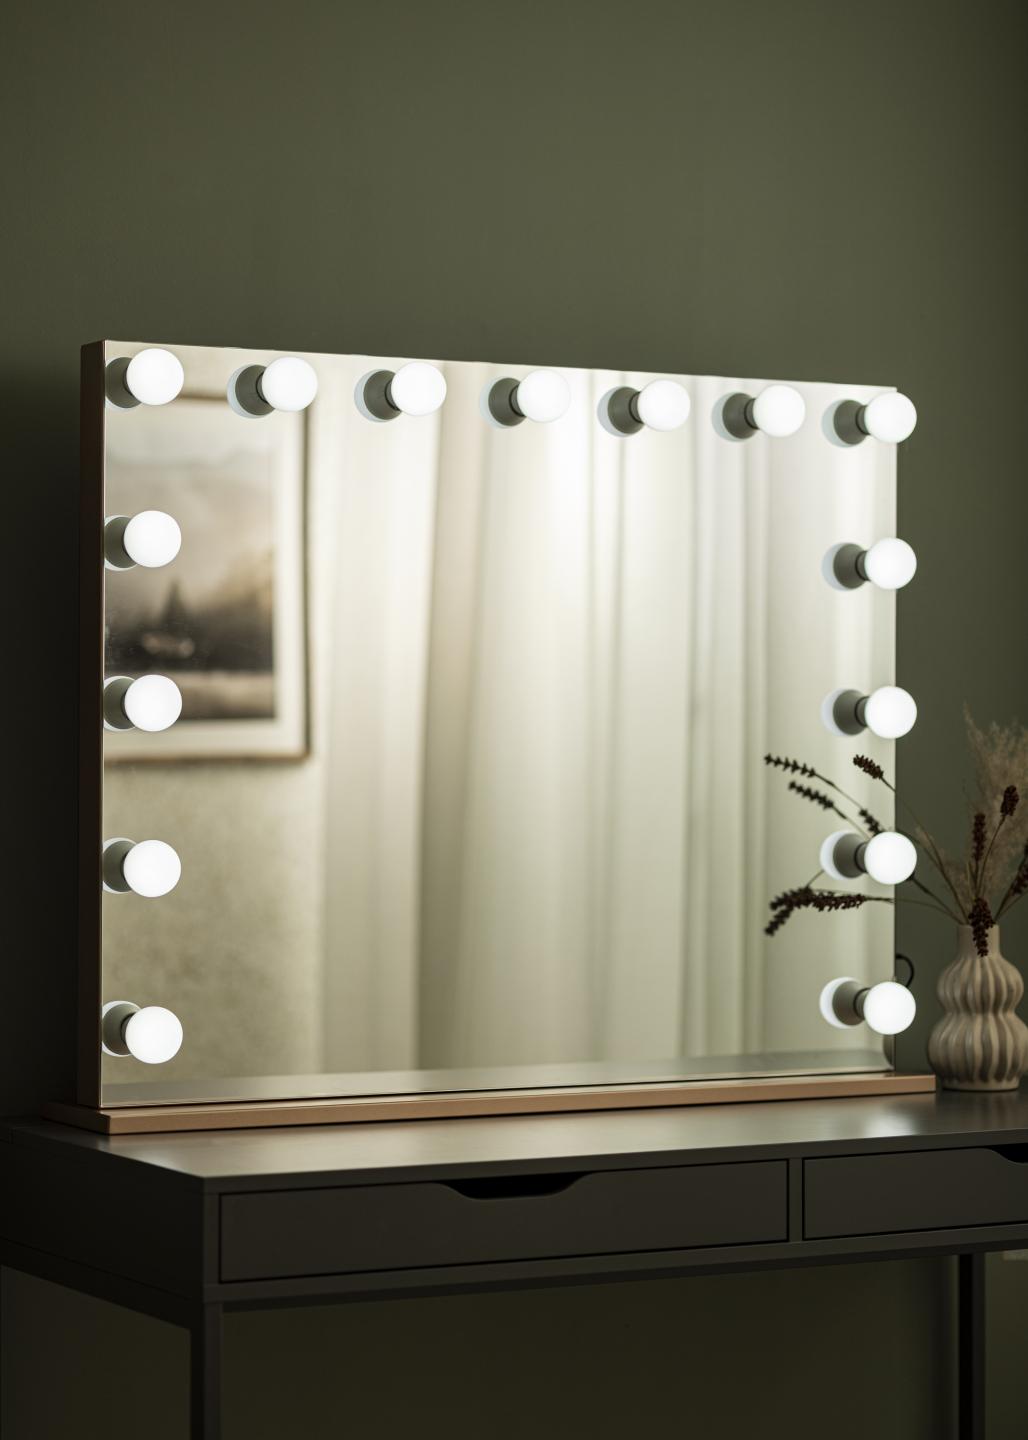 Miroir Hollywood avec lampe et Haut - parleur Bluetooth miroir de  maquillage avec 18 ampoules LED dimmables